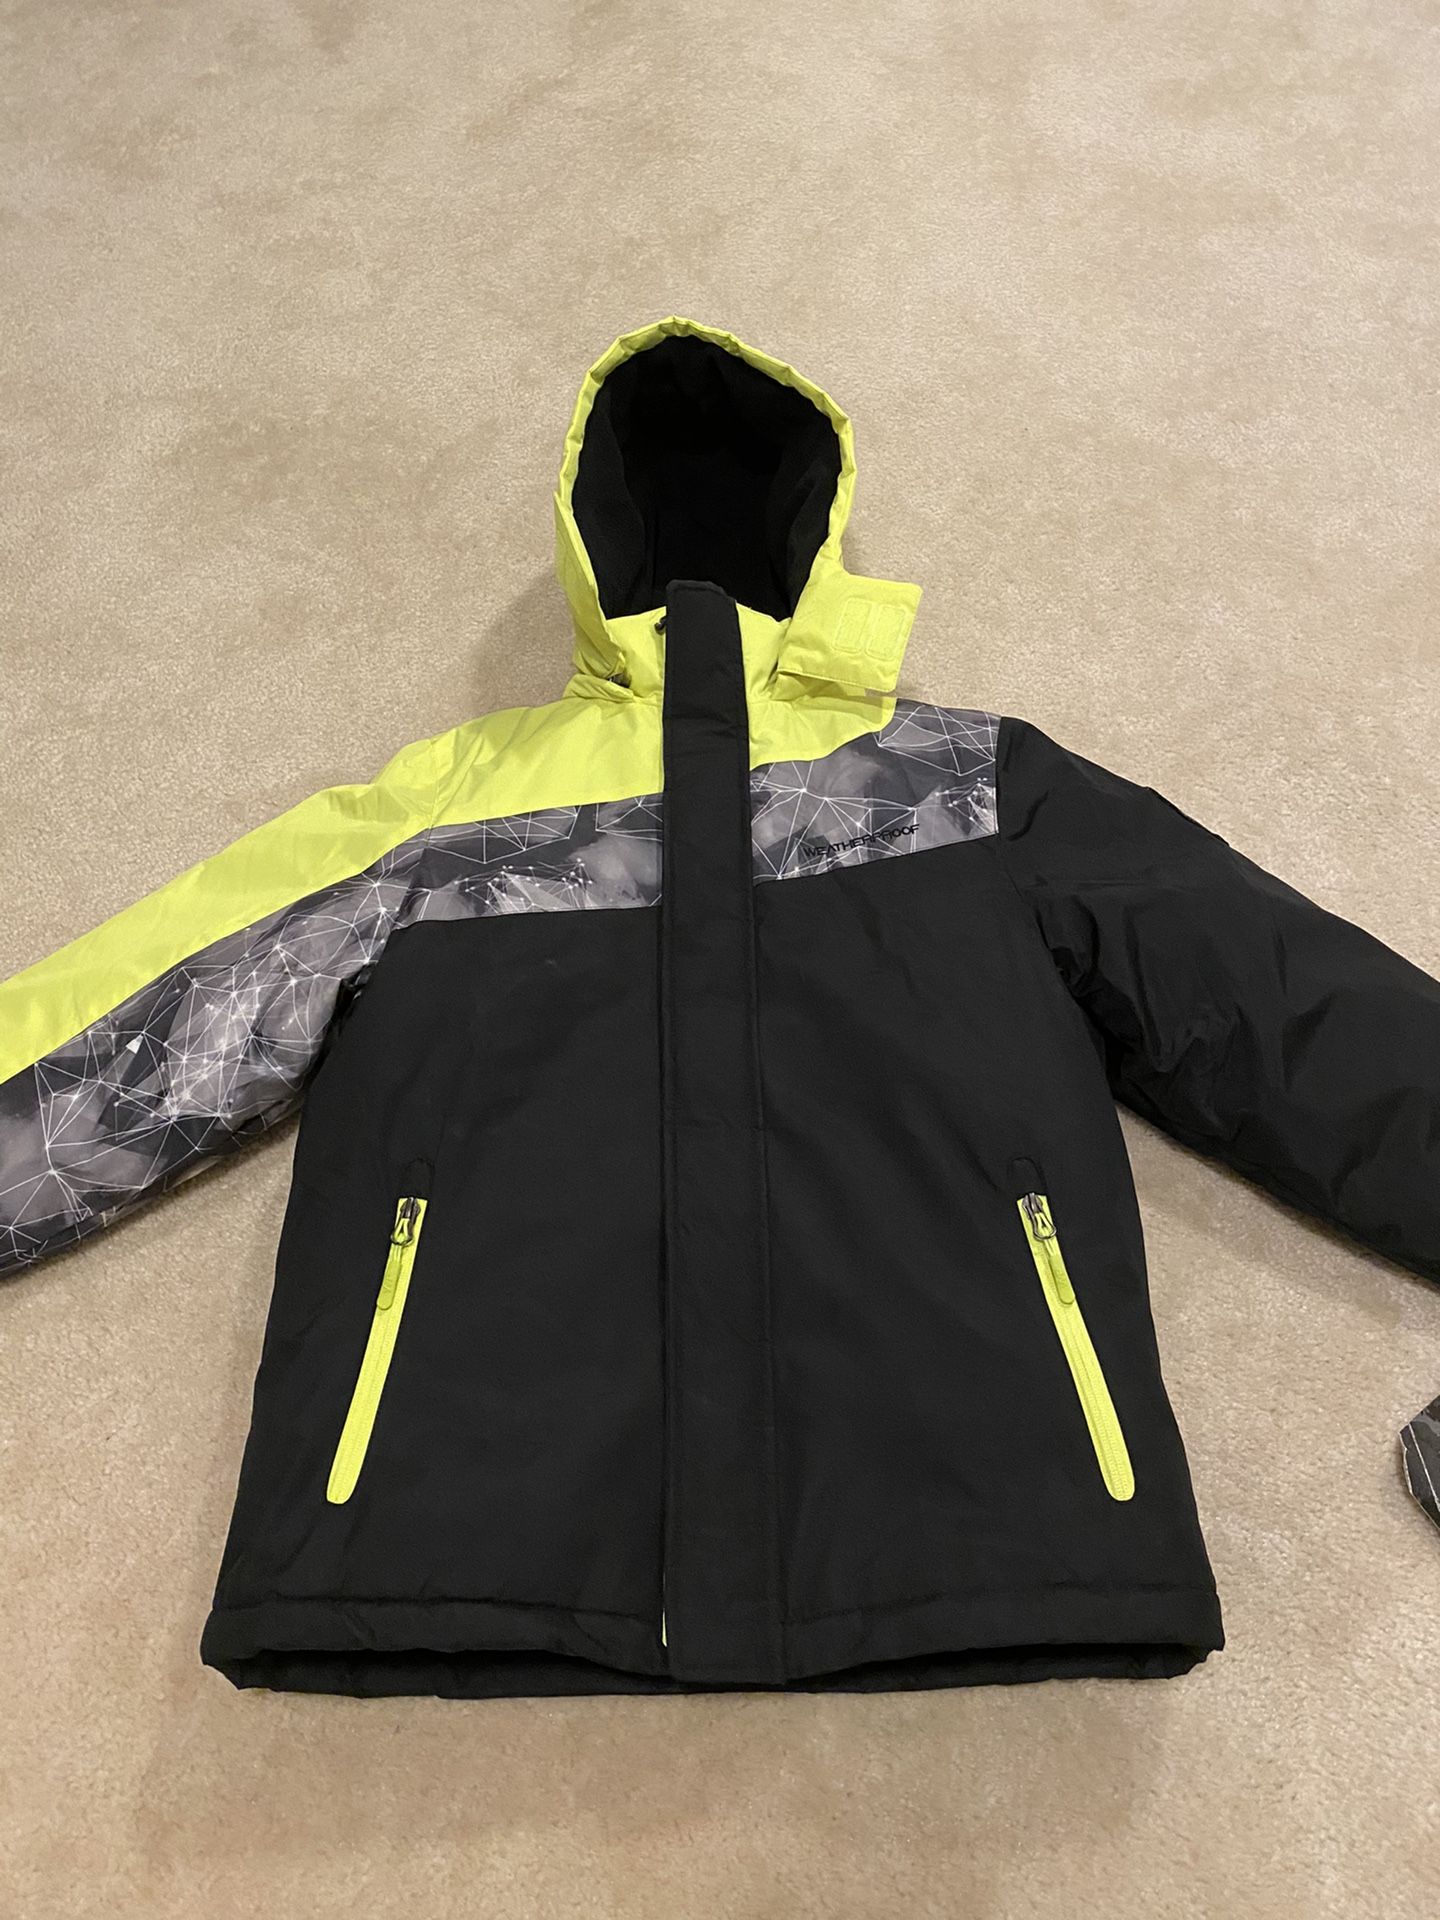 Brand New Kids Ski Jacket, (Size 10/12) Original Price $110